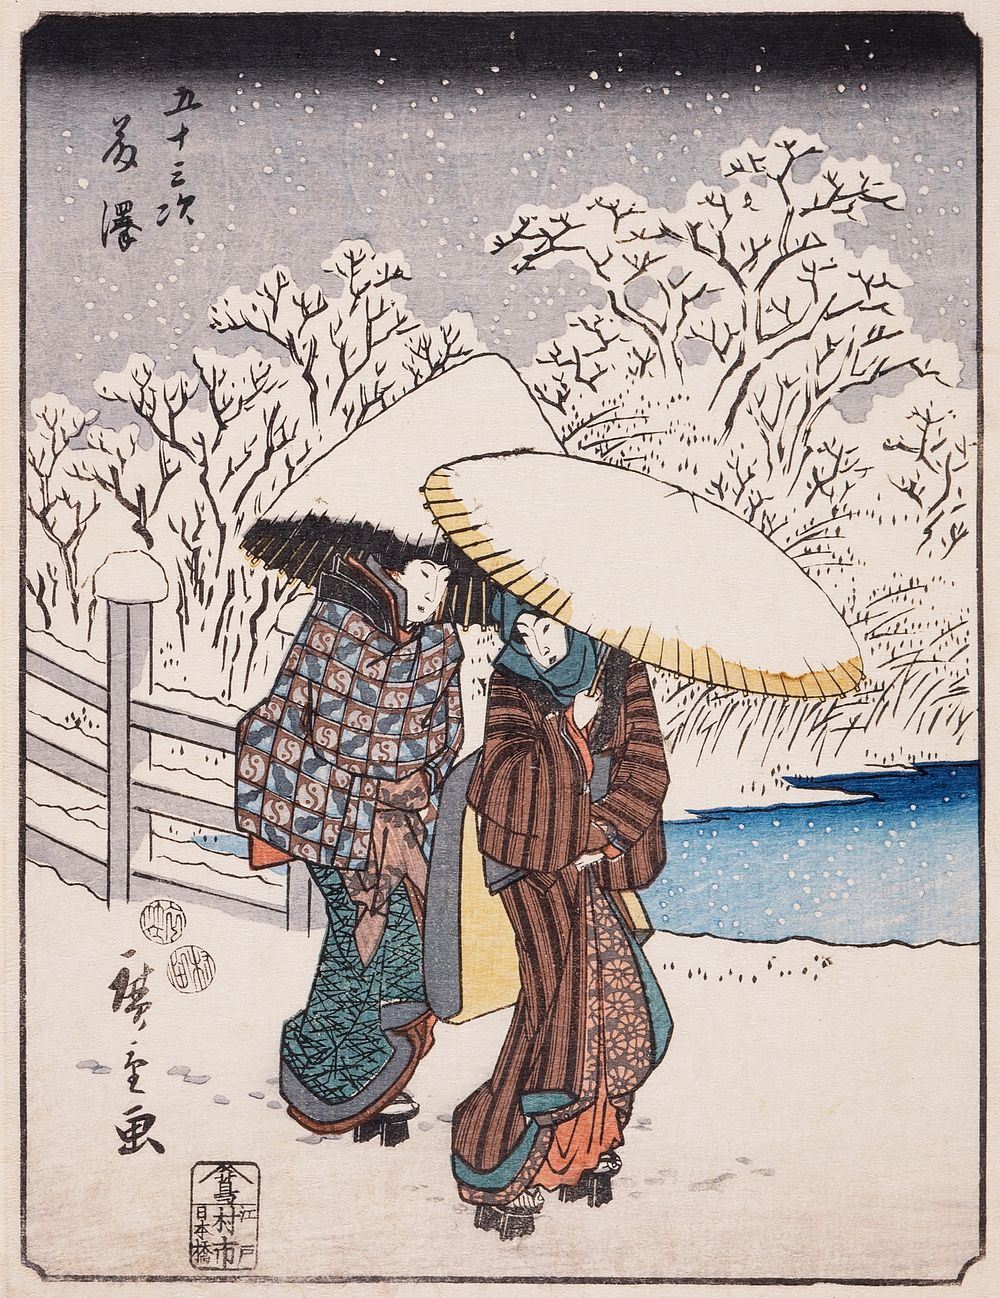 Fujisawa by Utagawa Hiroshige